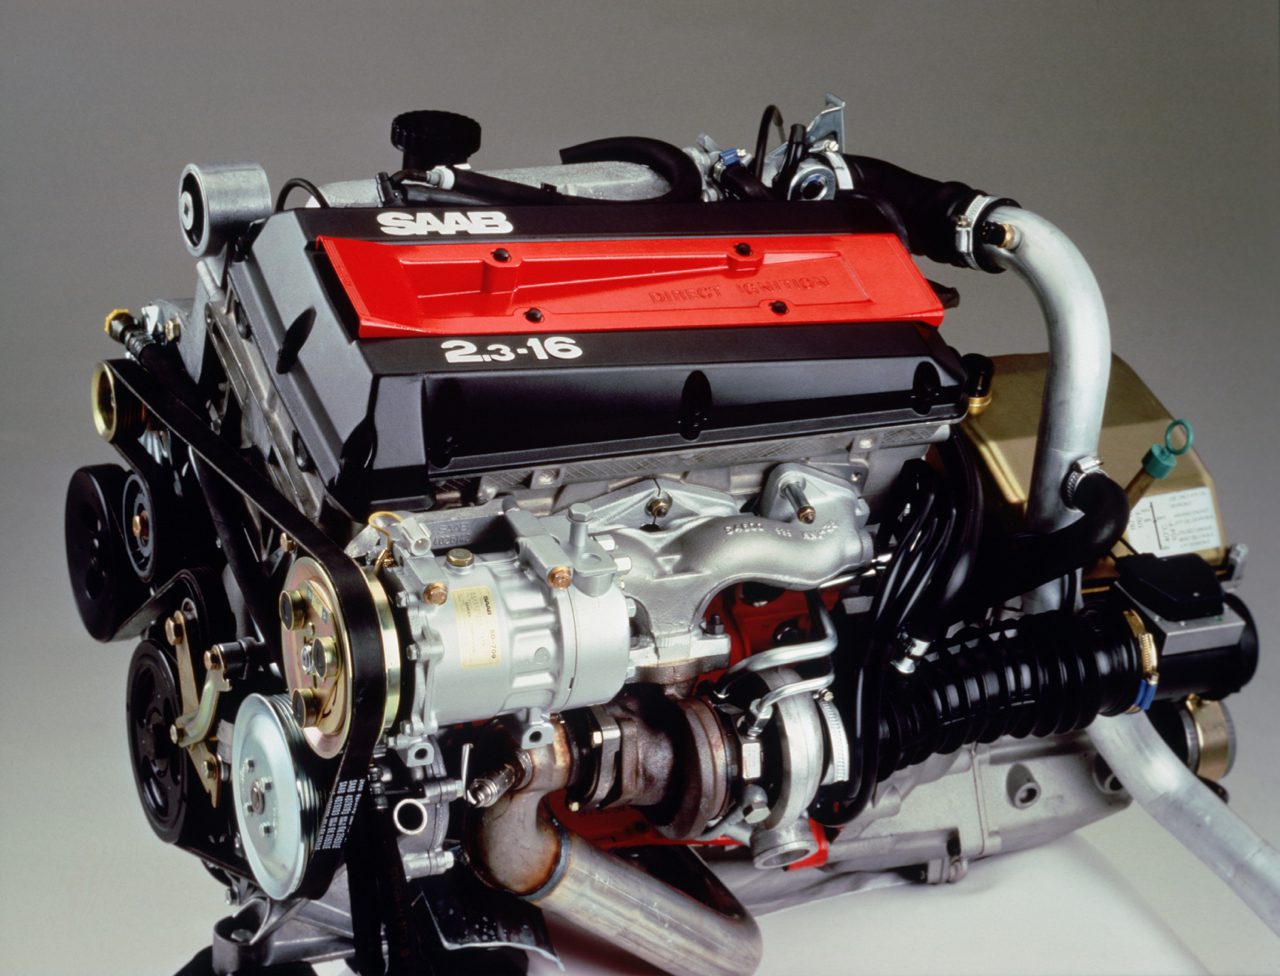 Saab 2.3 turbo engine